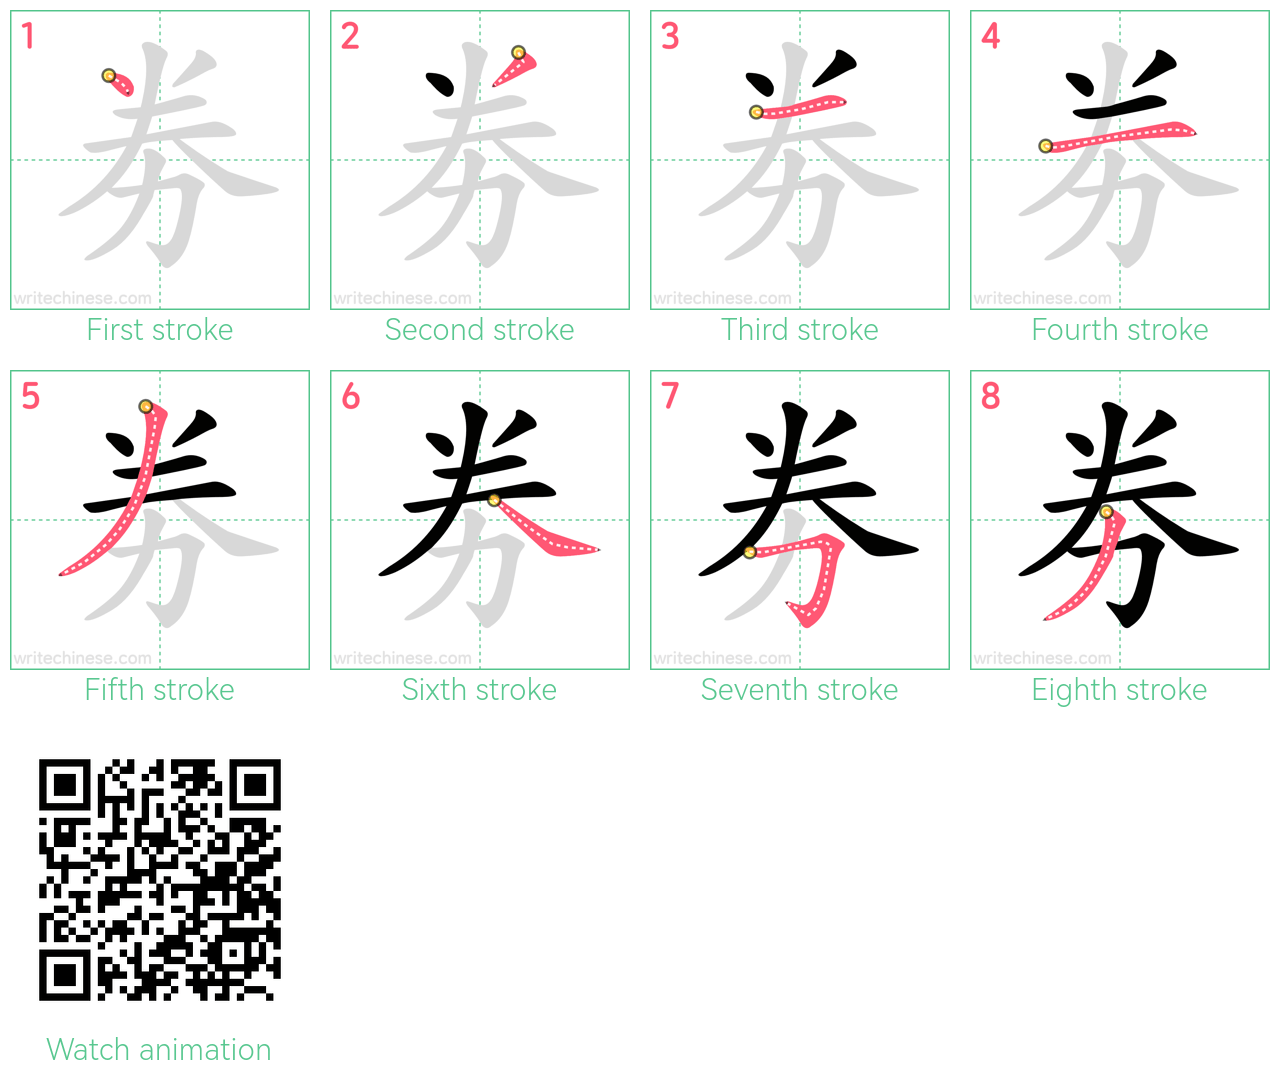 劵 step-by-step stroke order diagrams